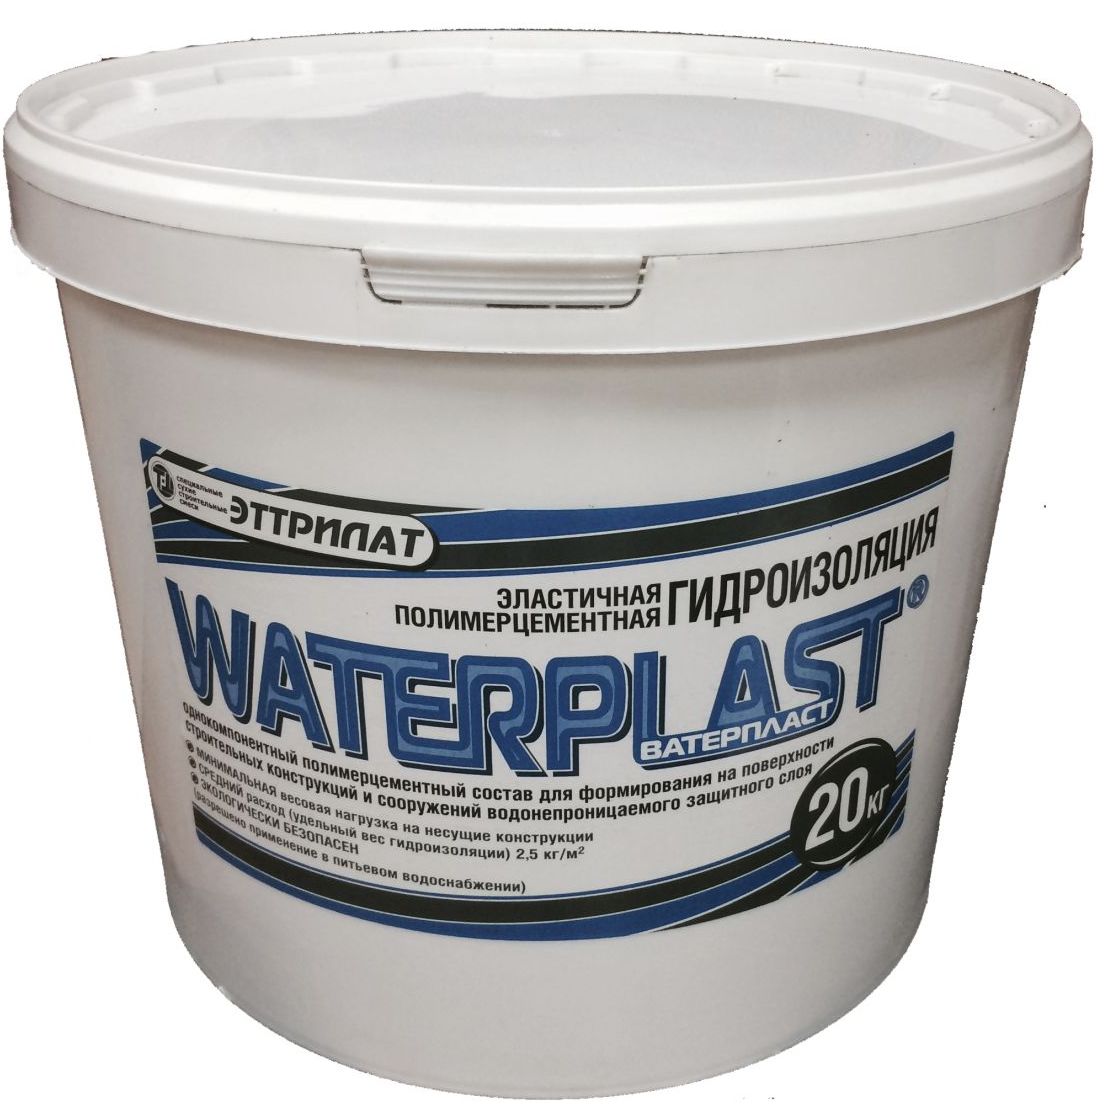 Гидроизолирующий состав Waterplast